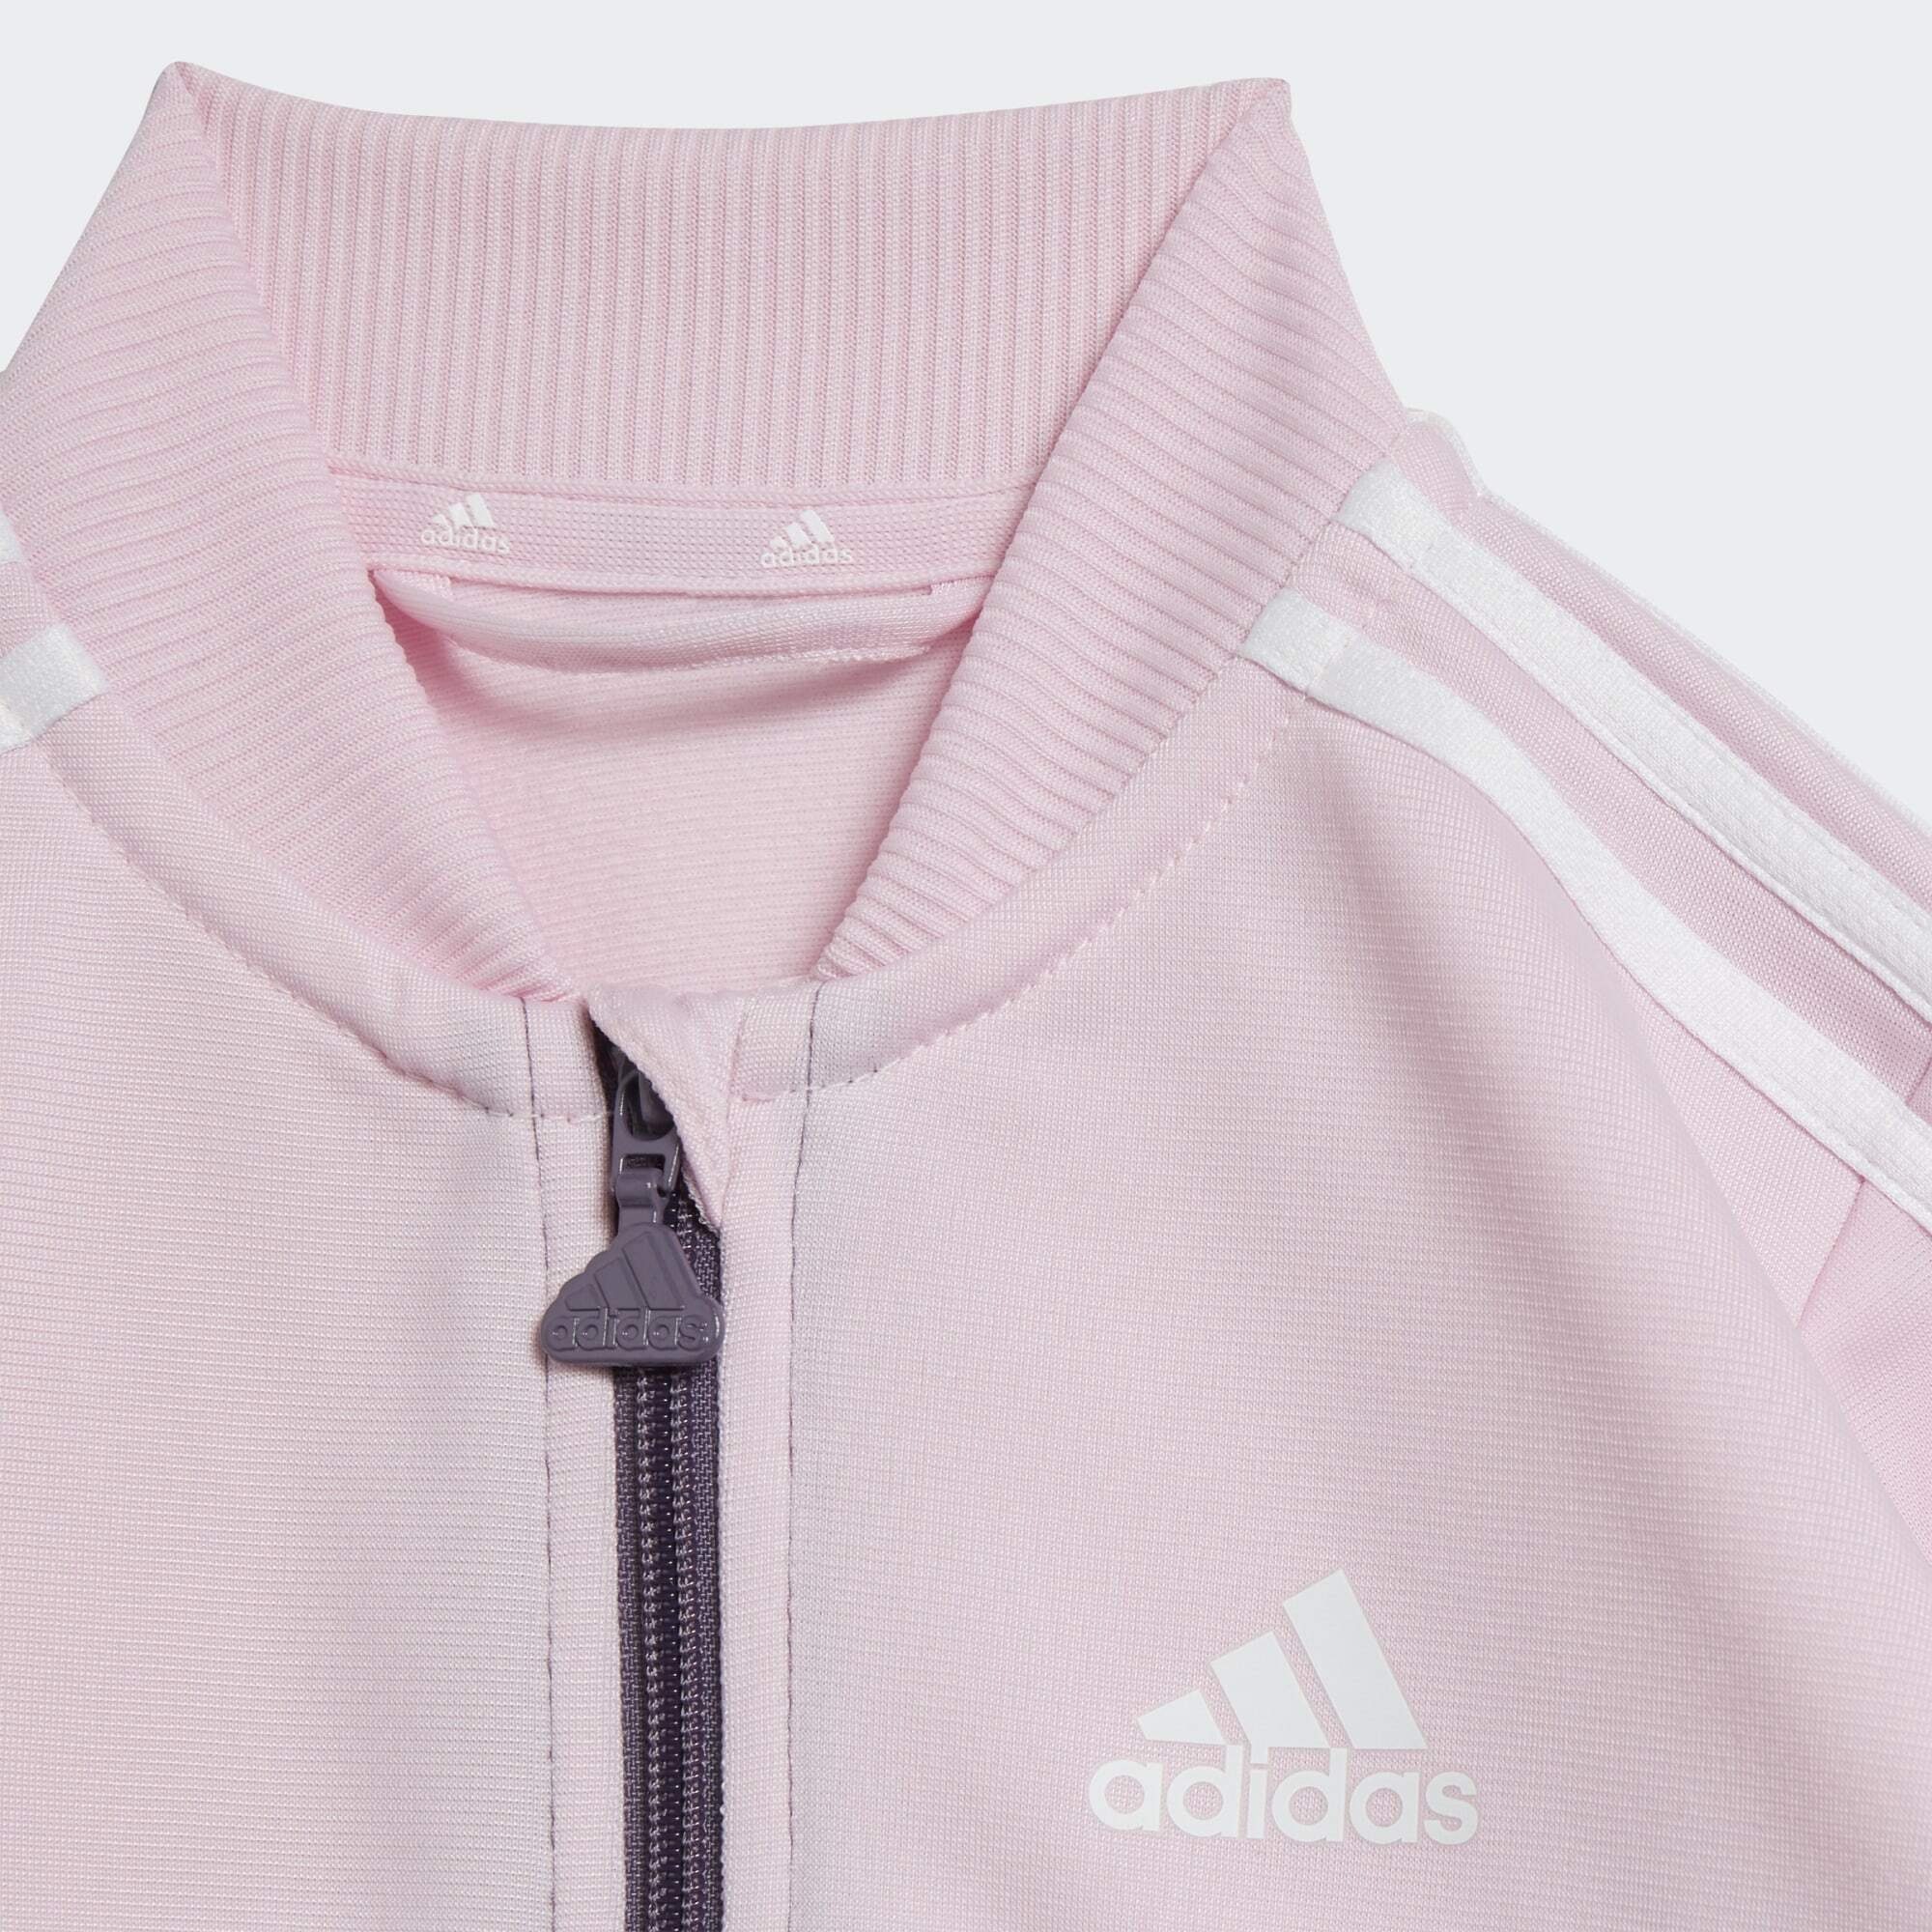 adidas Clear Pink Trainingsanzug / Violet Sportswear Shadow / White